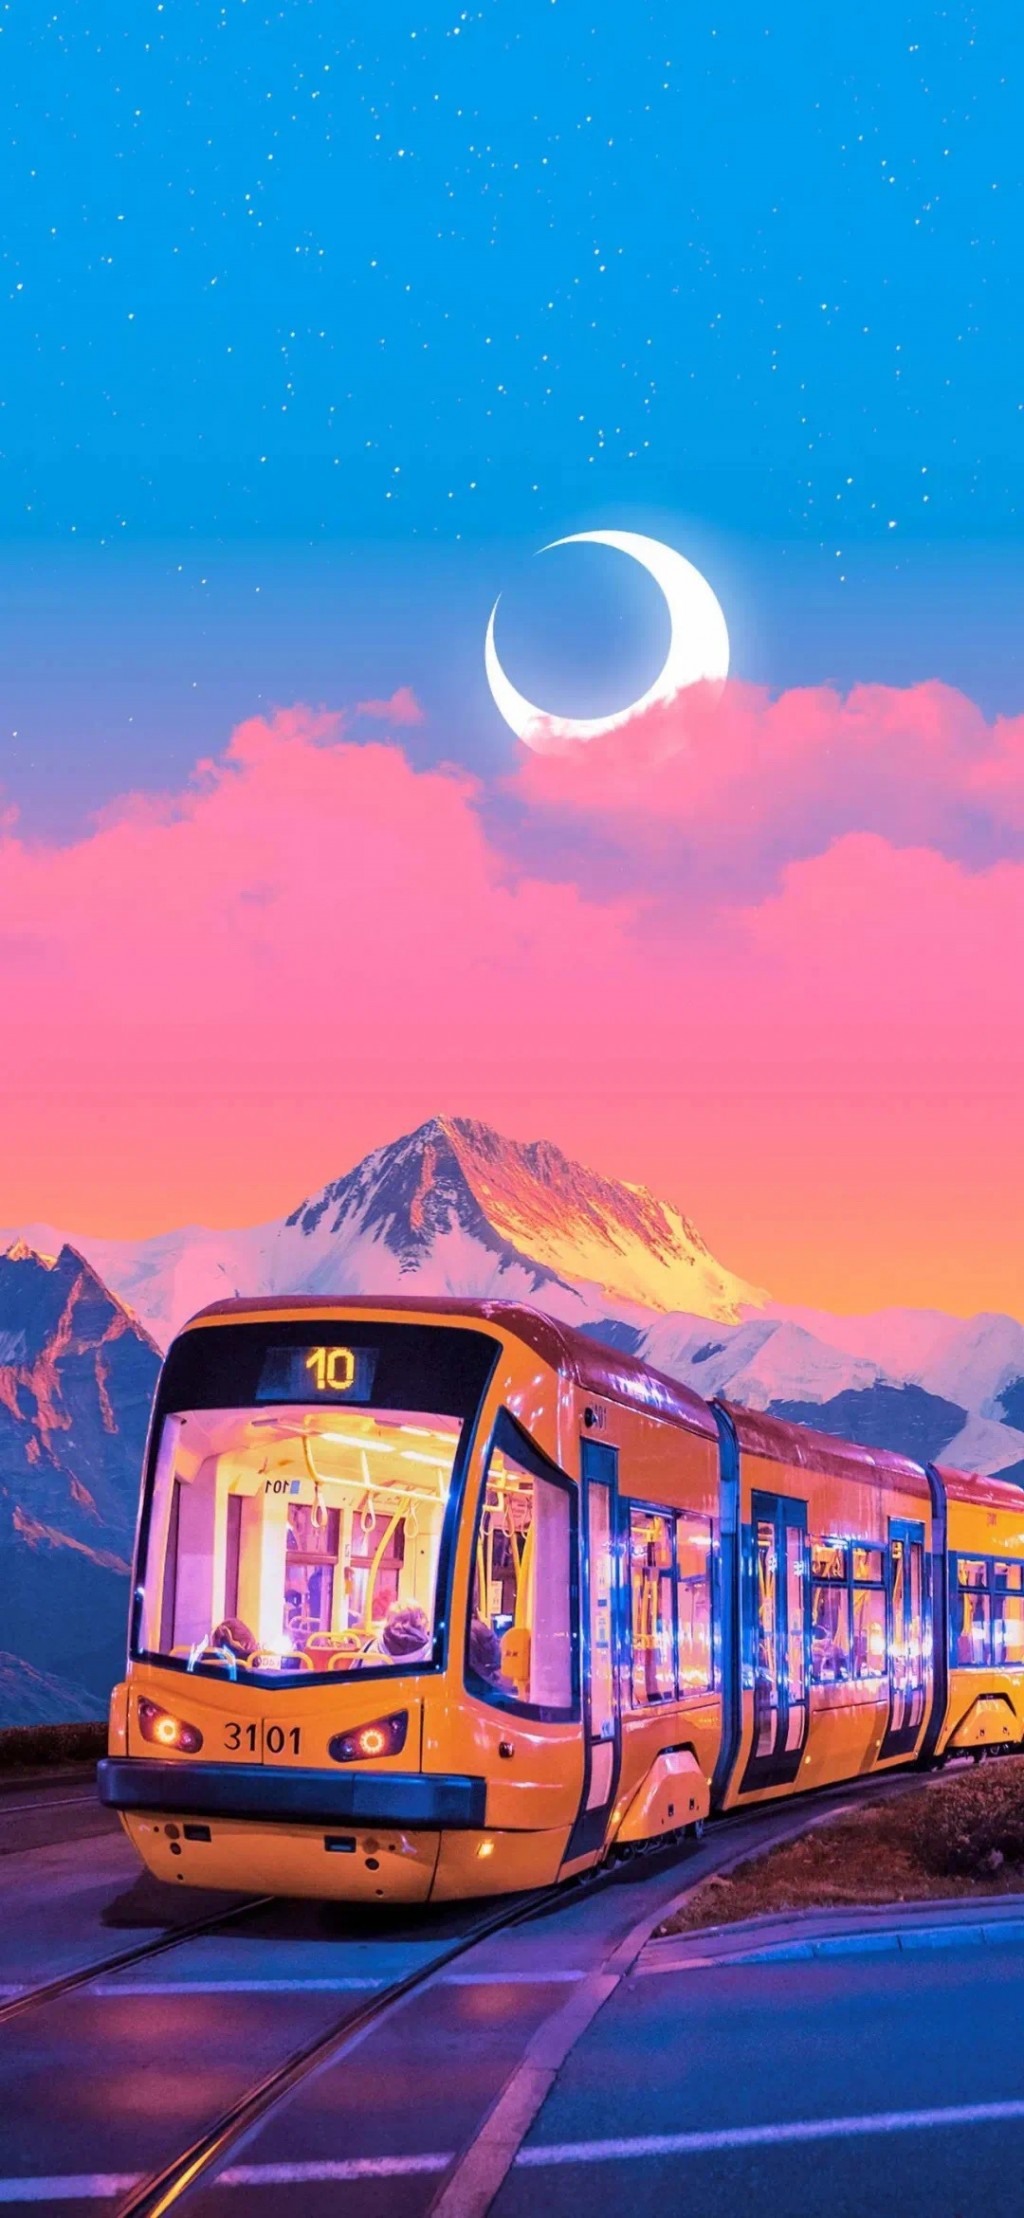 唯美梦幻火车风景创意手机壁纸